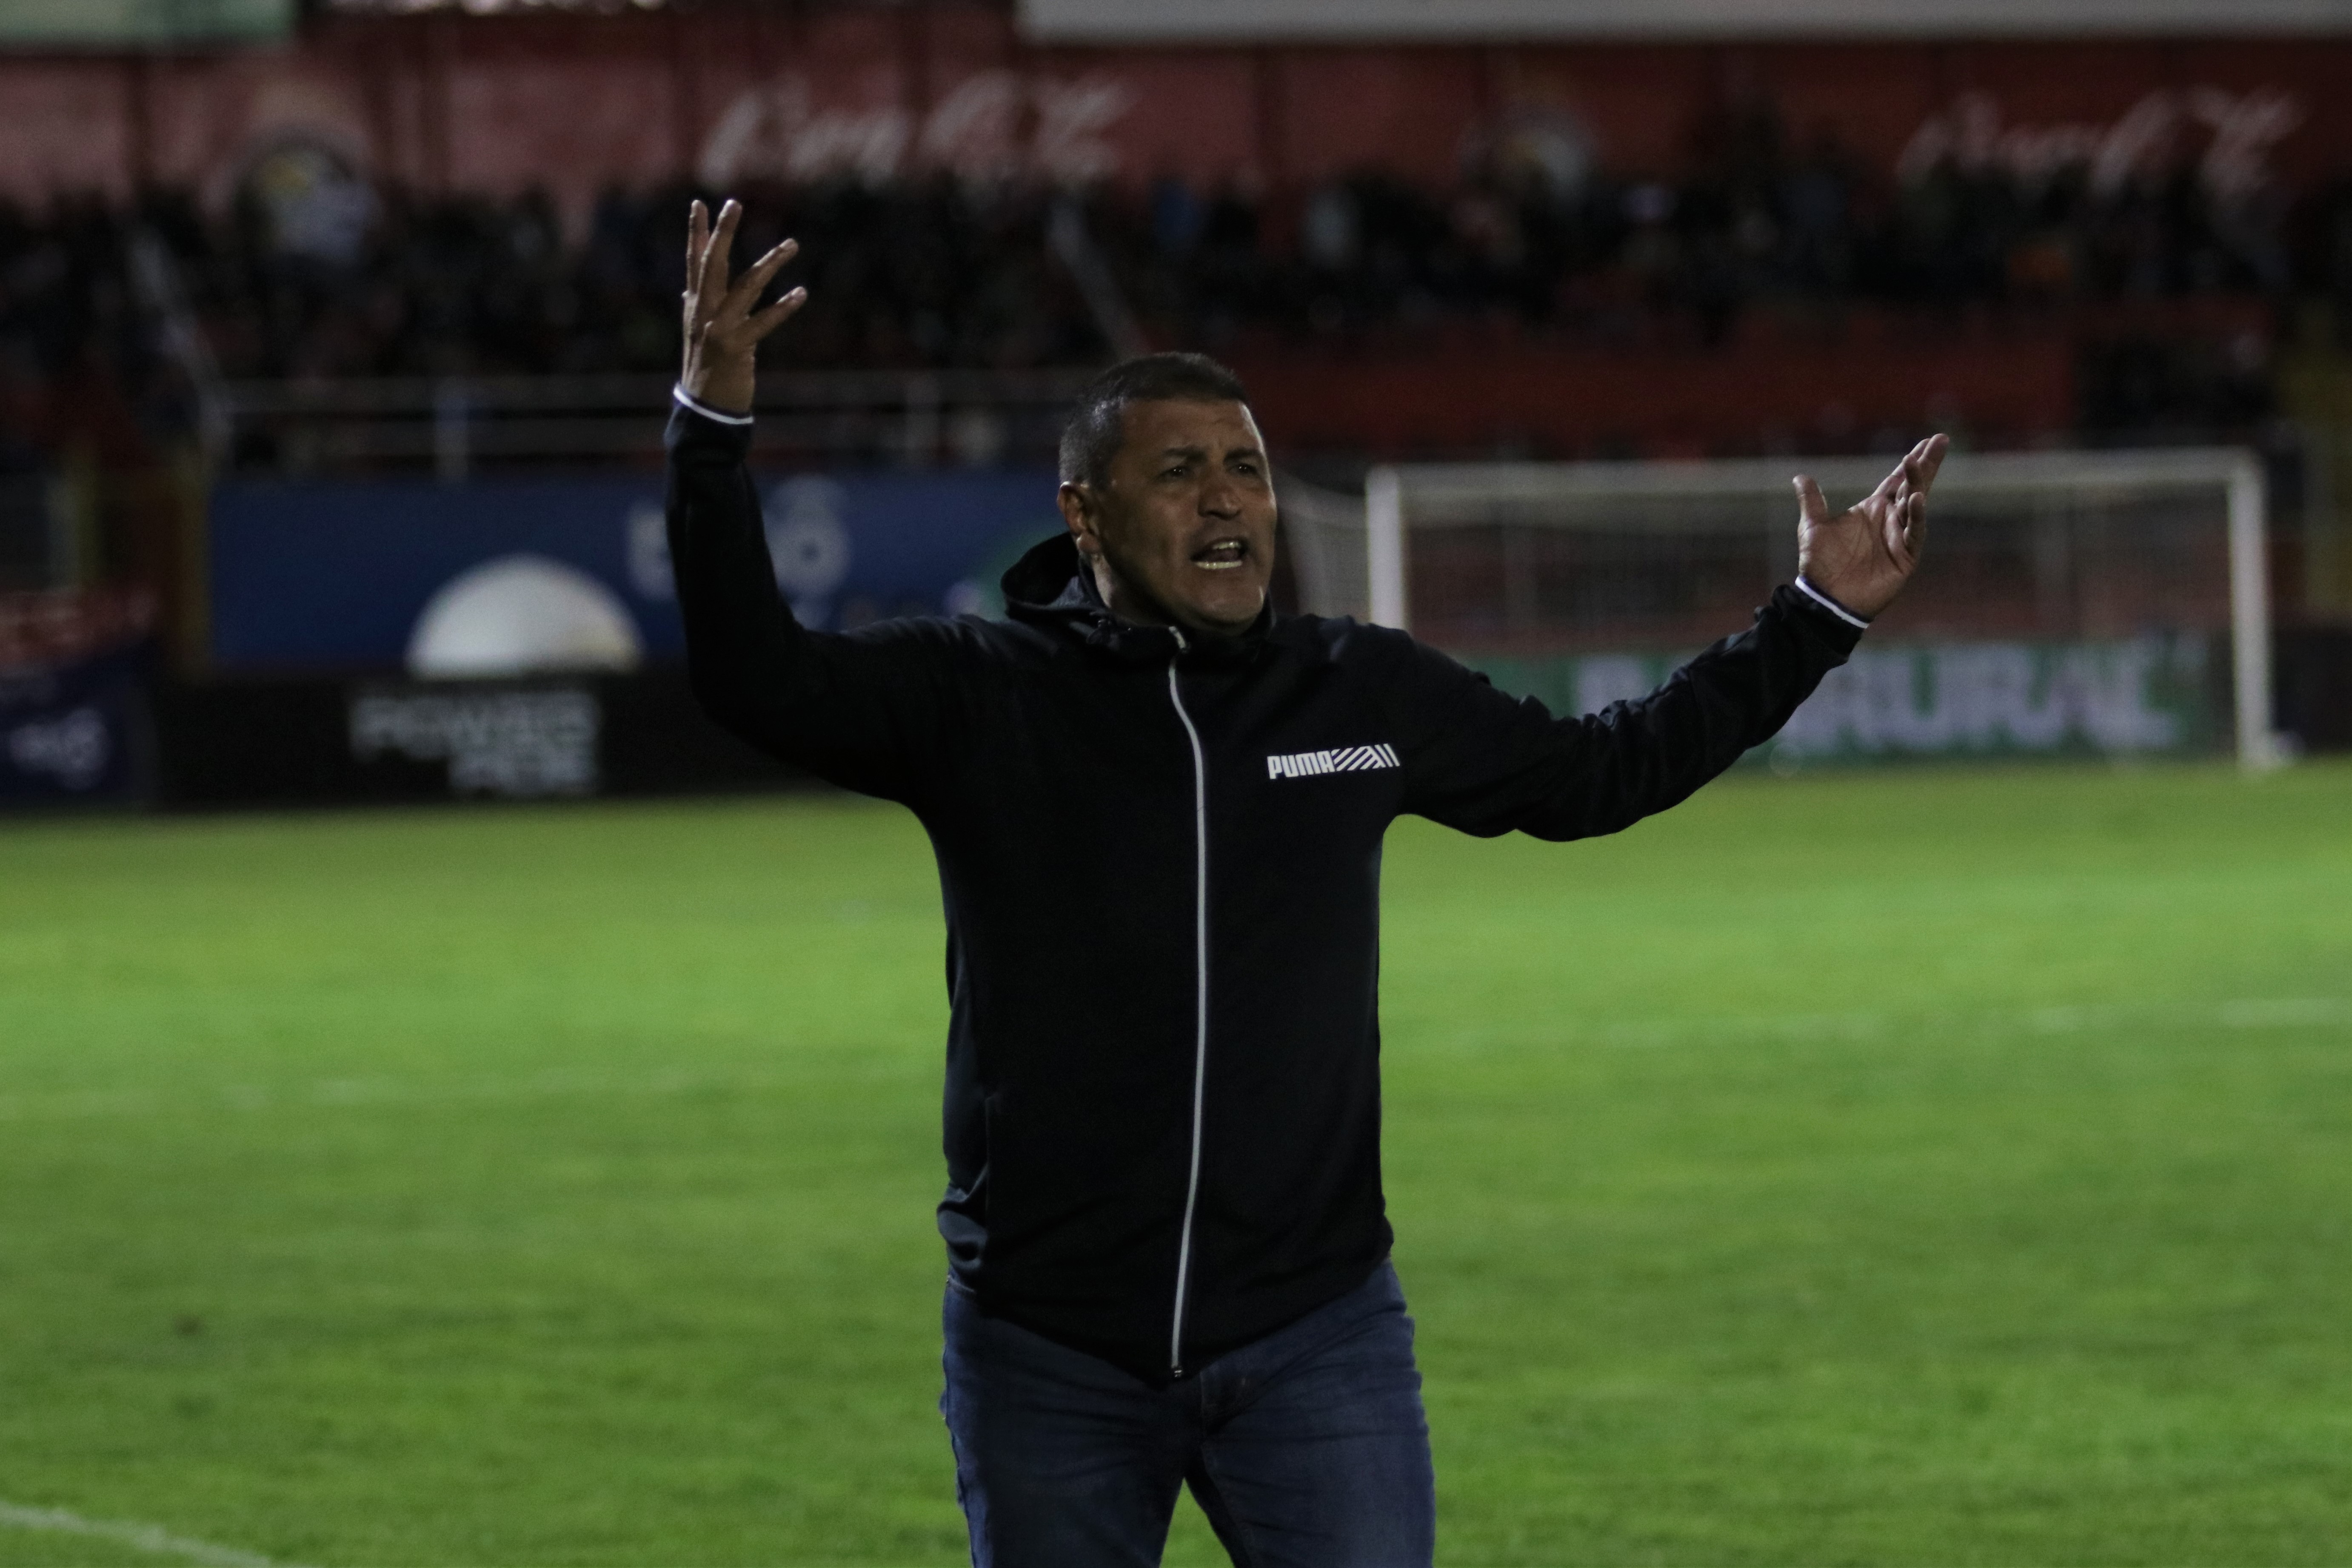 El técnico Walter Horacio González, ha dirigido 15 partidos con Xelajú, y mantiene una efectividad de siente victorias, cinco empates y tres derrotas. (Foto Prensa Libre: Raúl Juárez)